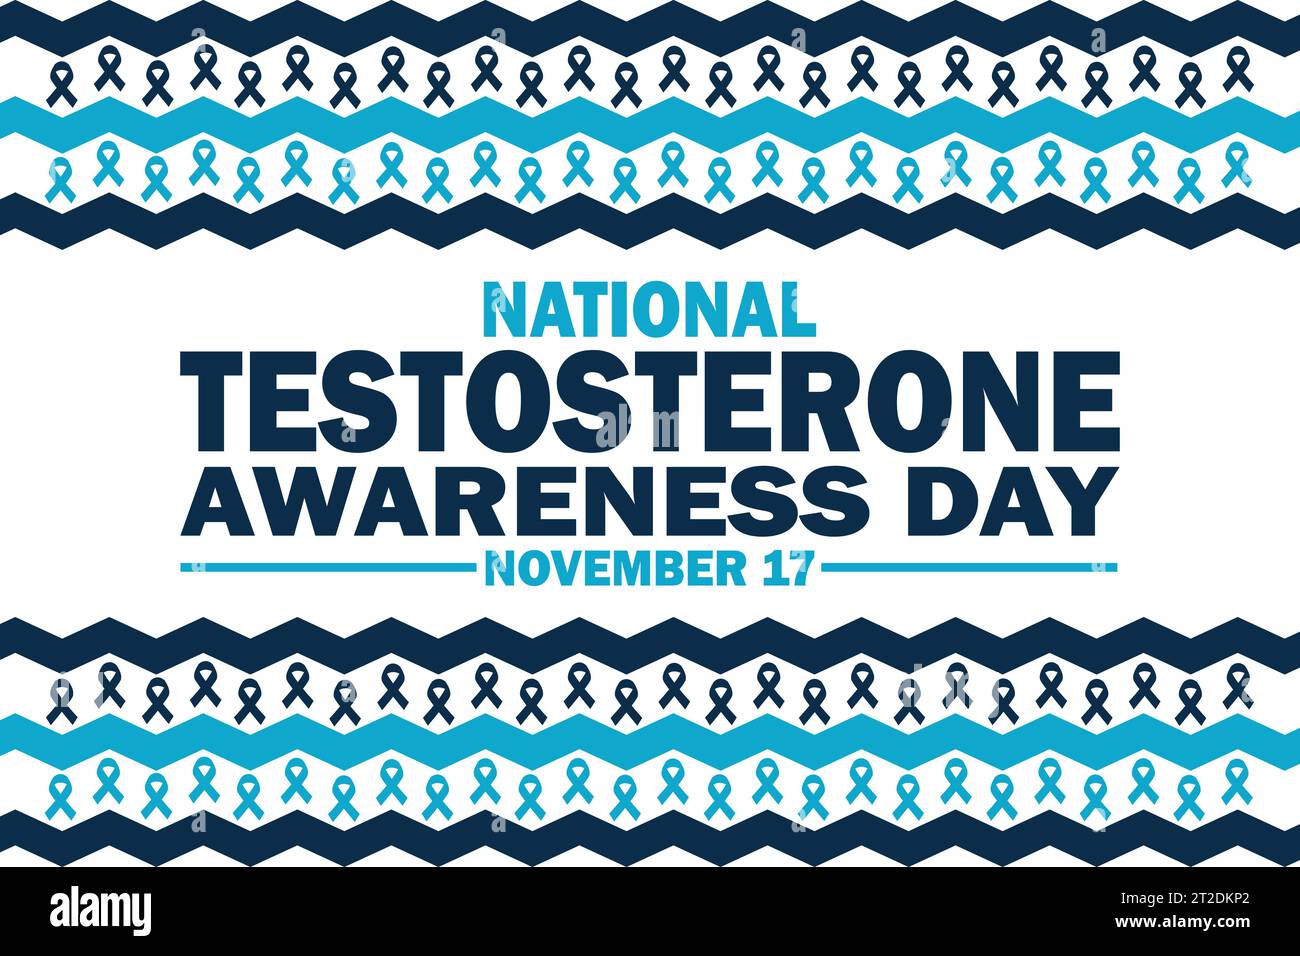 Nationaler Testosteron-Awareness-Tag. November. Urlaubskonzept. Vorlage für Hintergrund, Banner, Karte, Poster mit Textbeschriftung. Vektor Stock Vektor